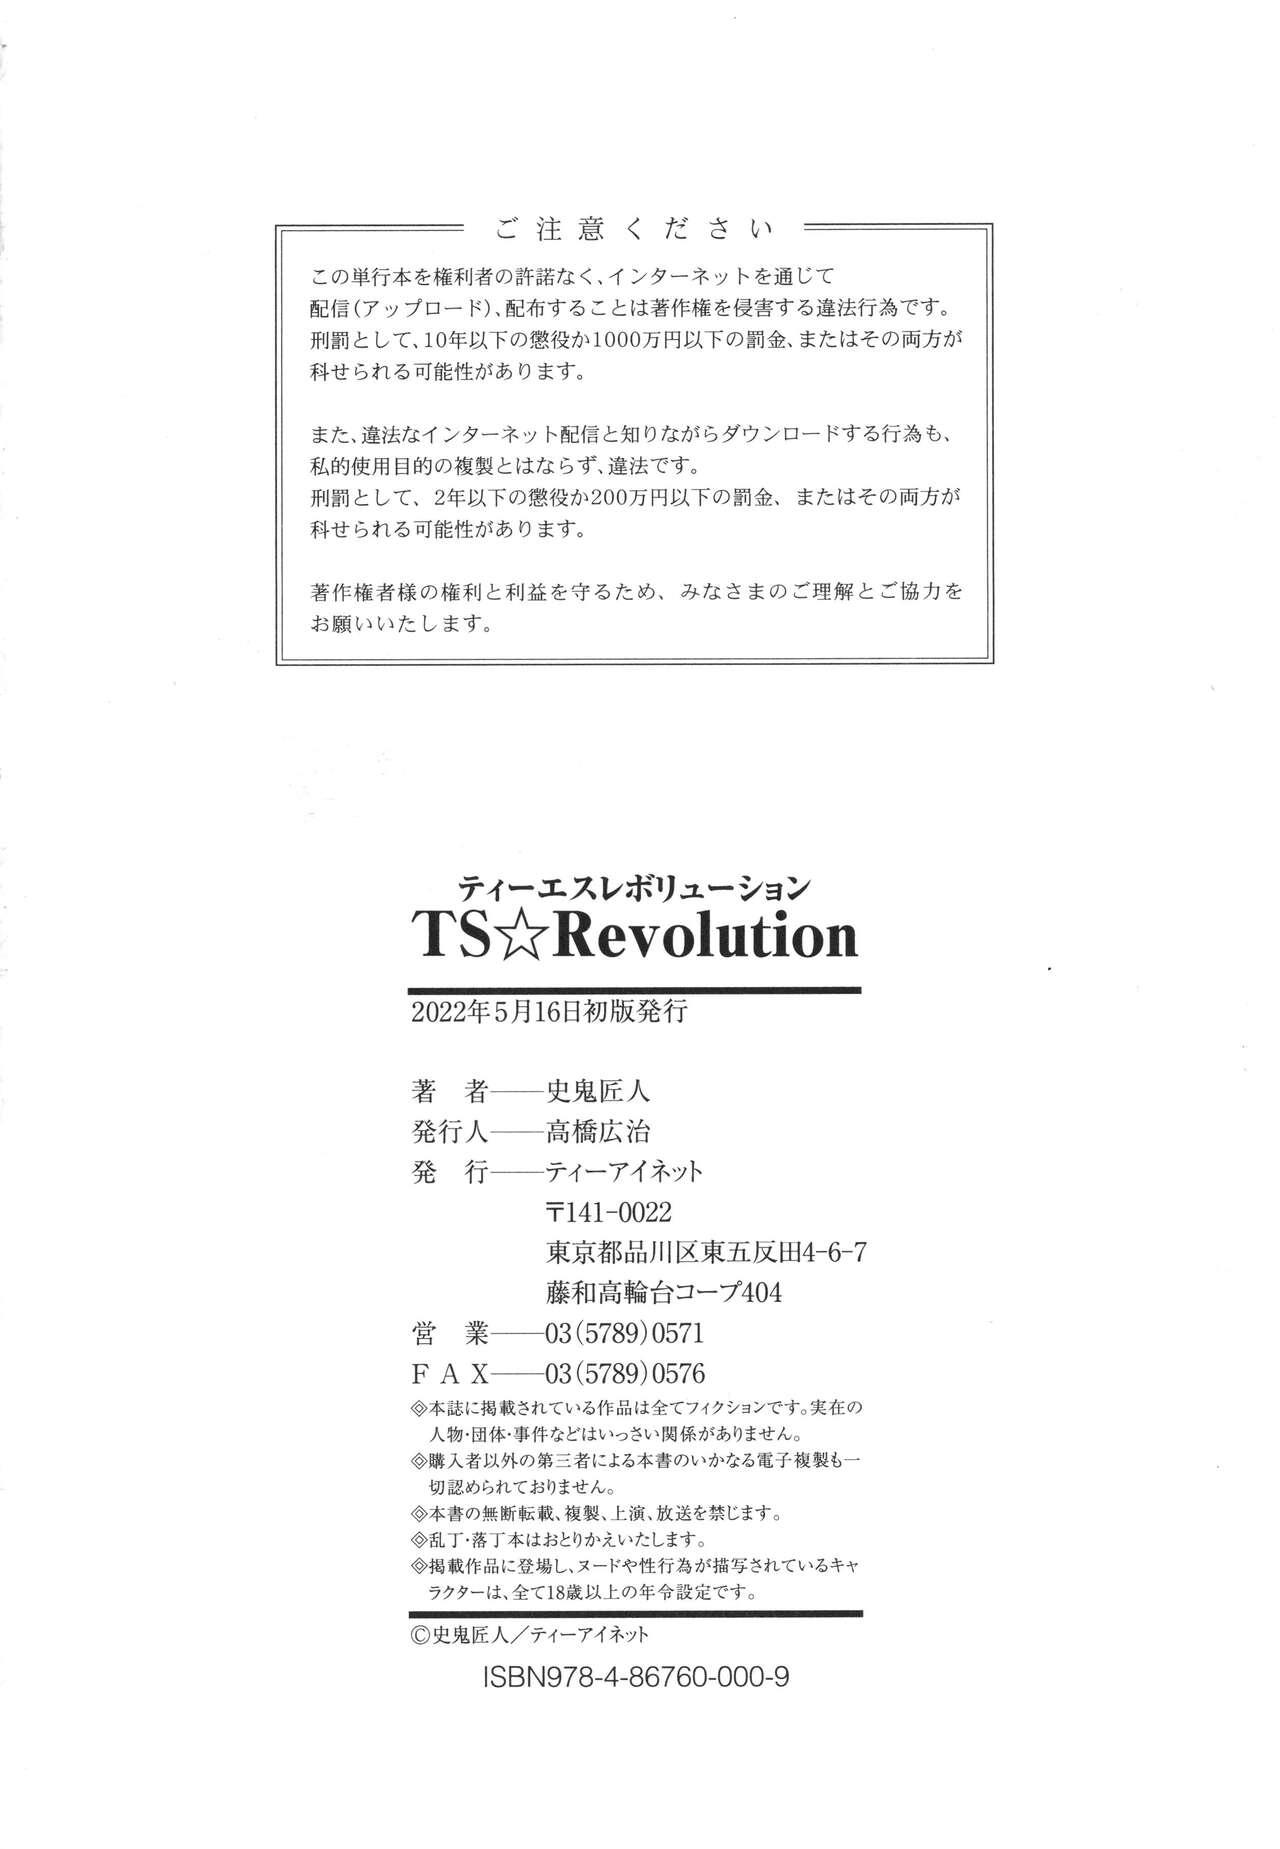 TS Revolution 233